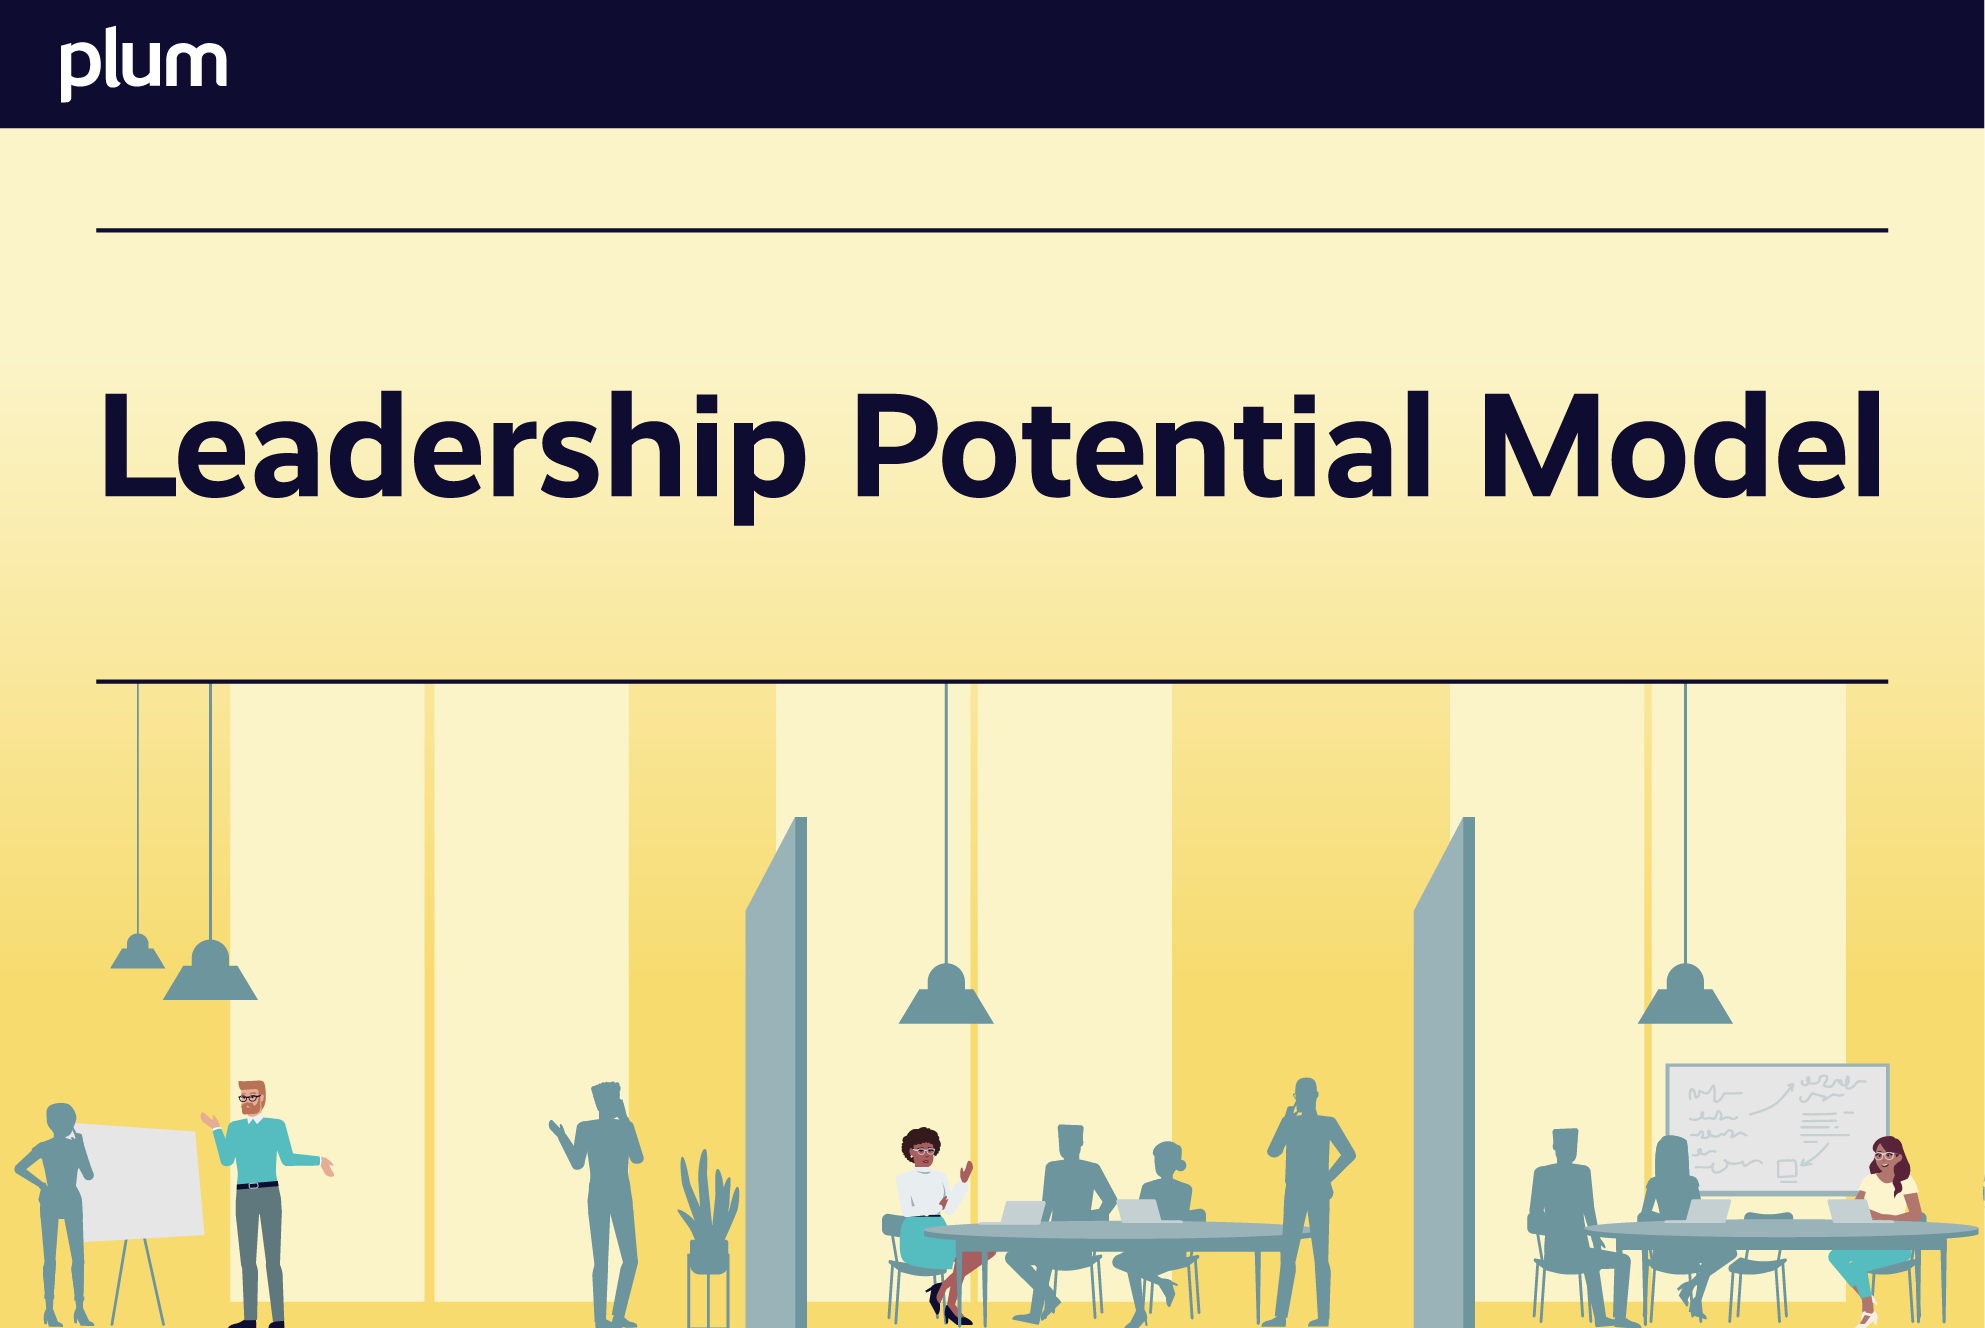 Plum's Leadership Potential Model